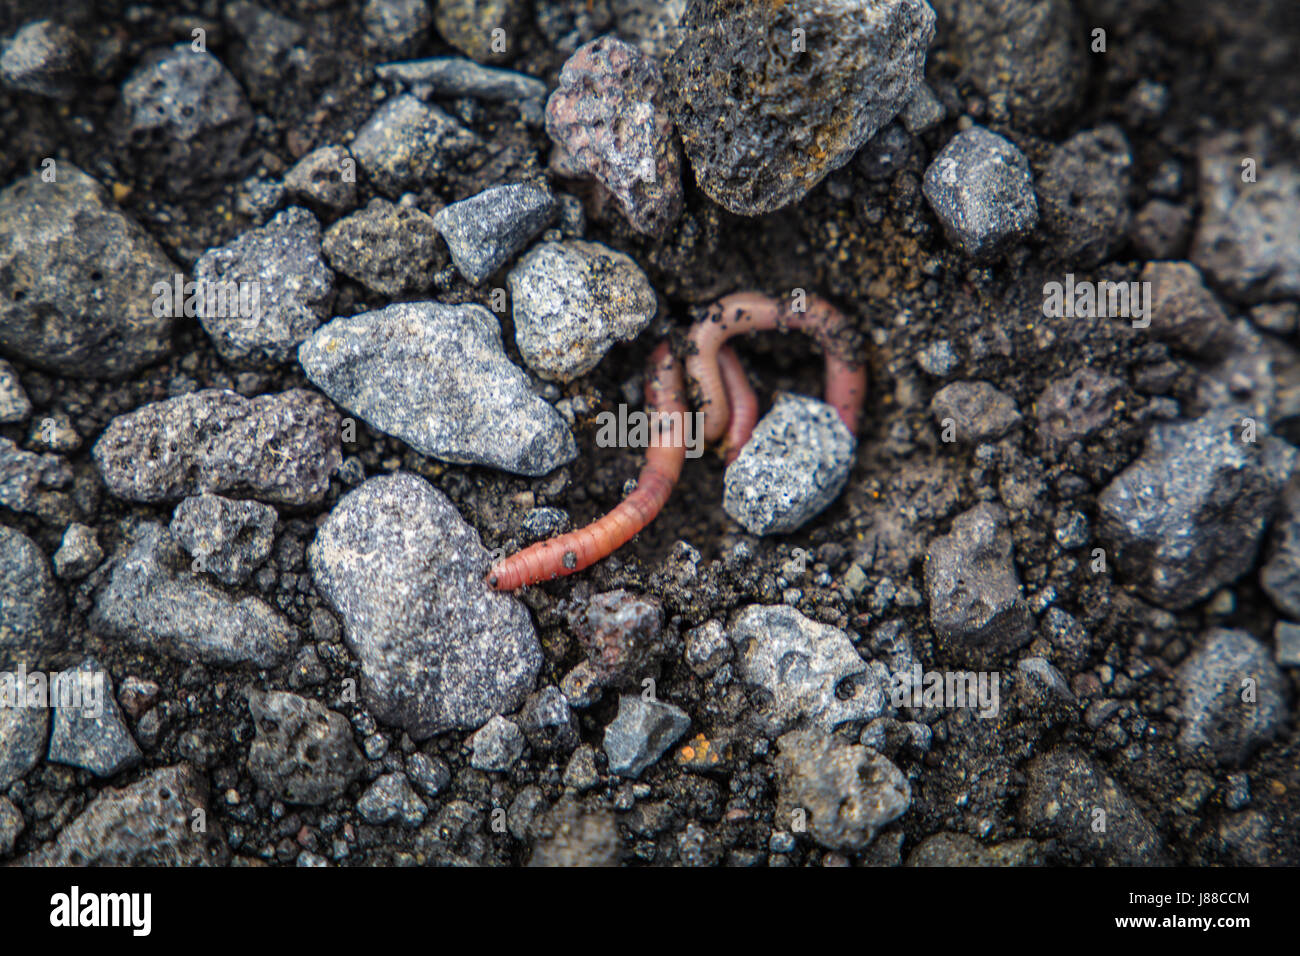 Lombrico comune lombrico terrestris segmentata di worm su terreno roccioso di massa. Foto Stock